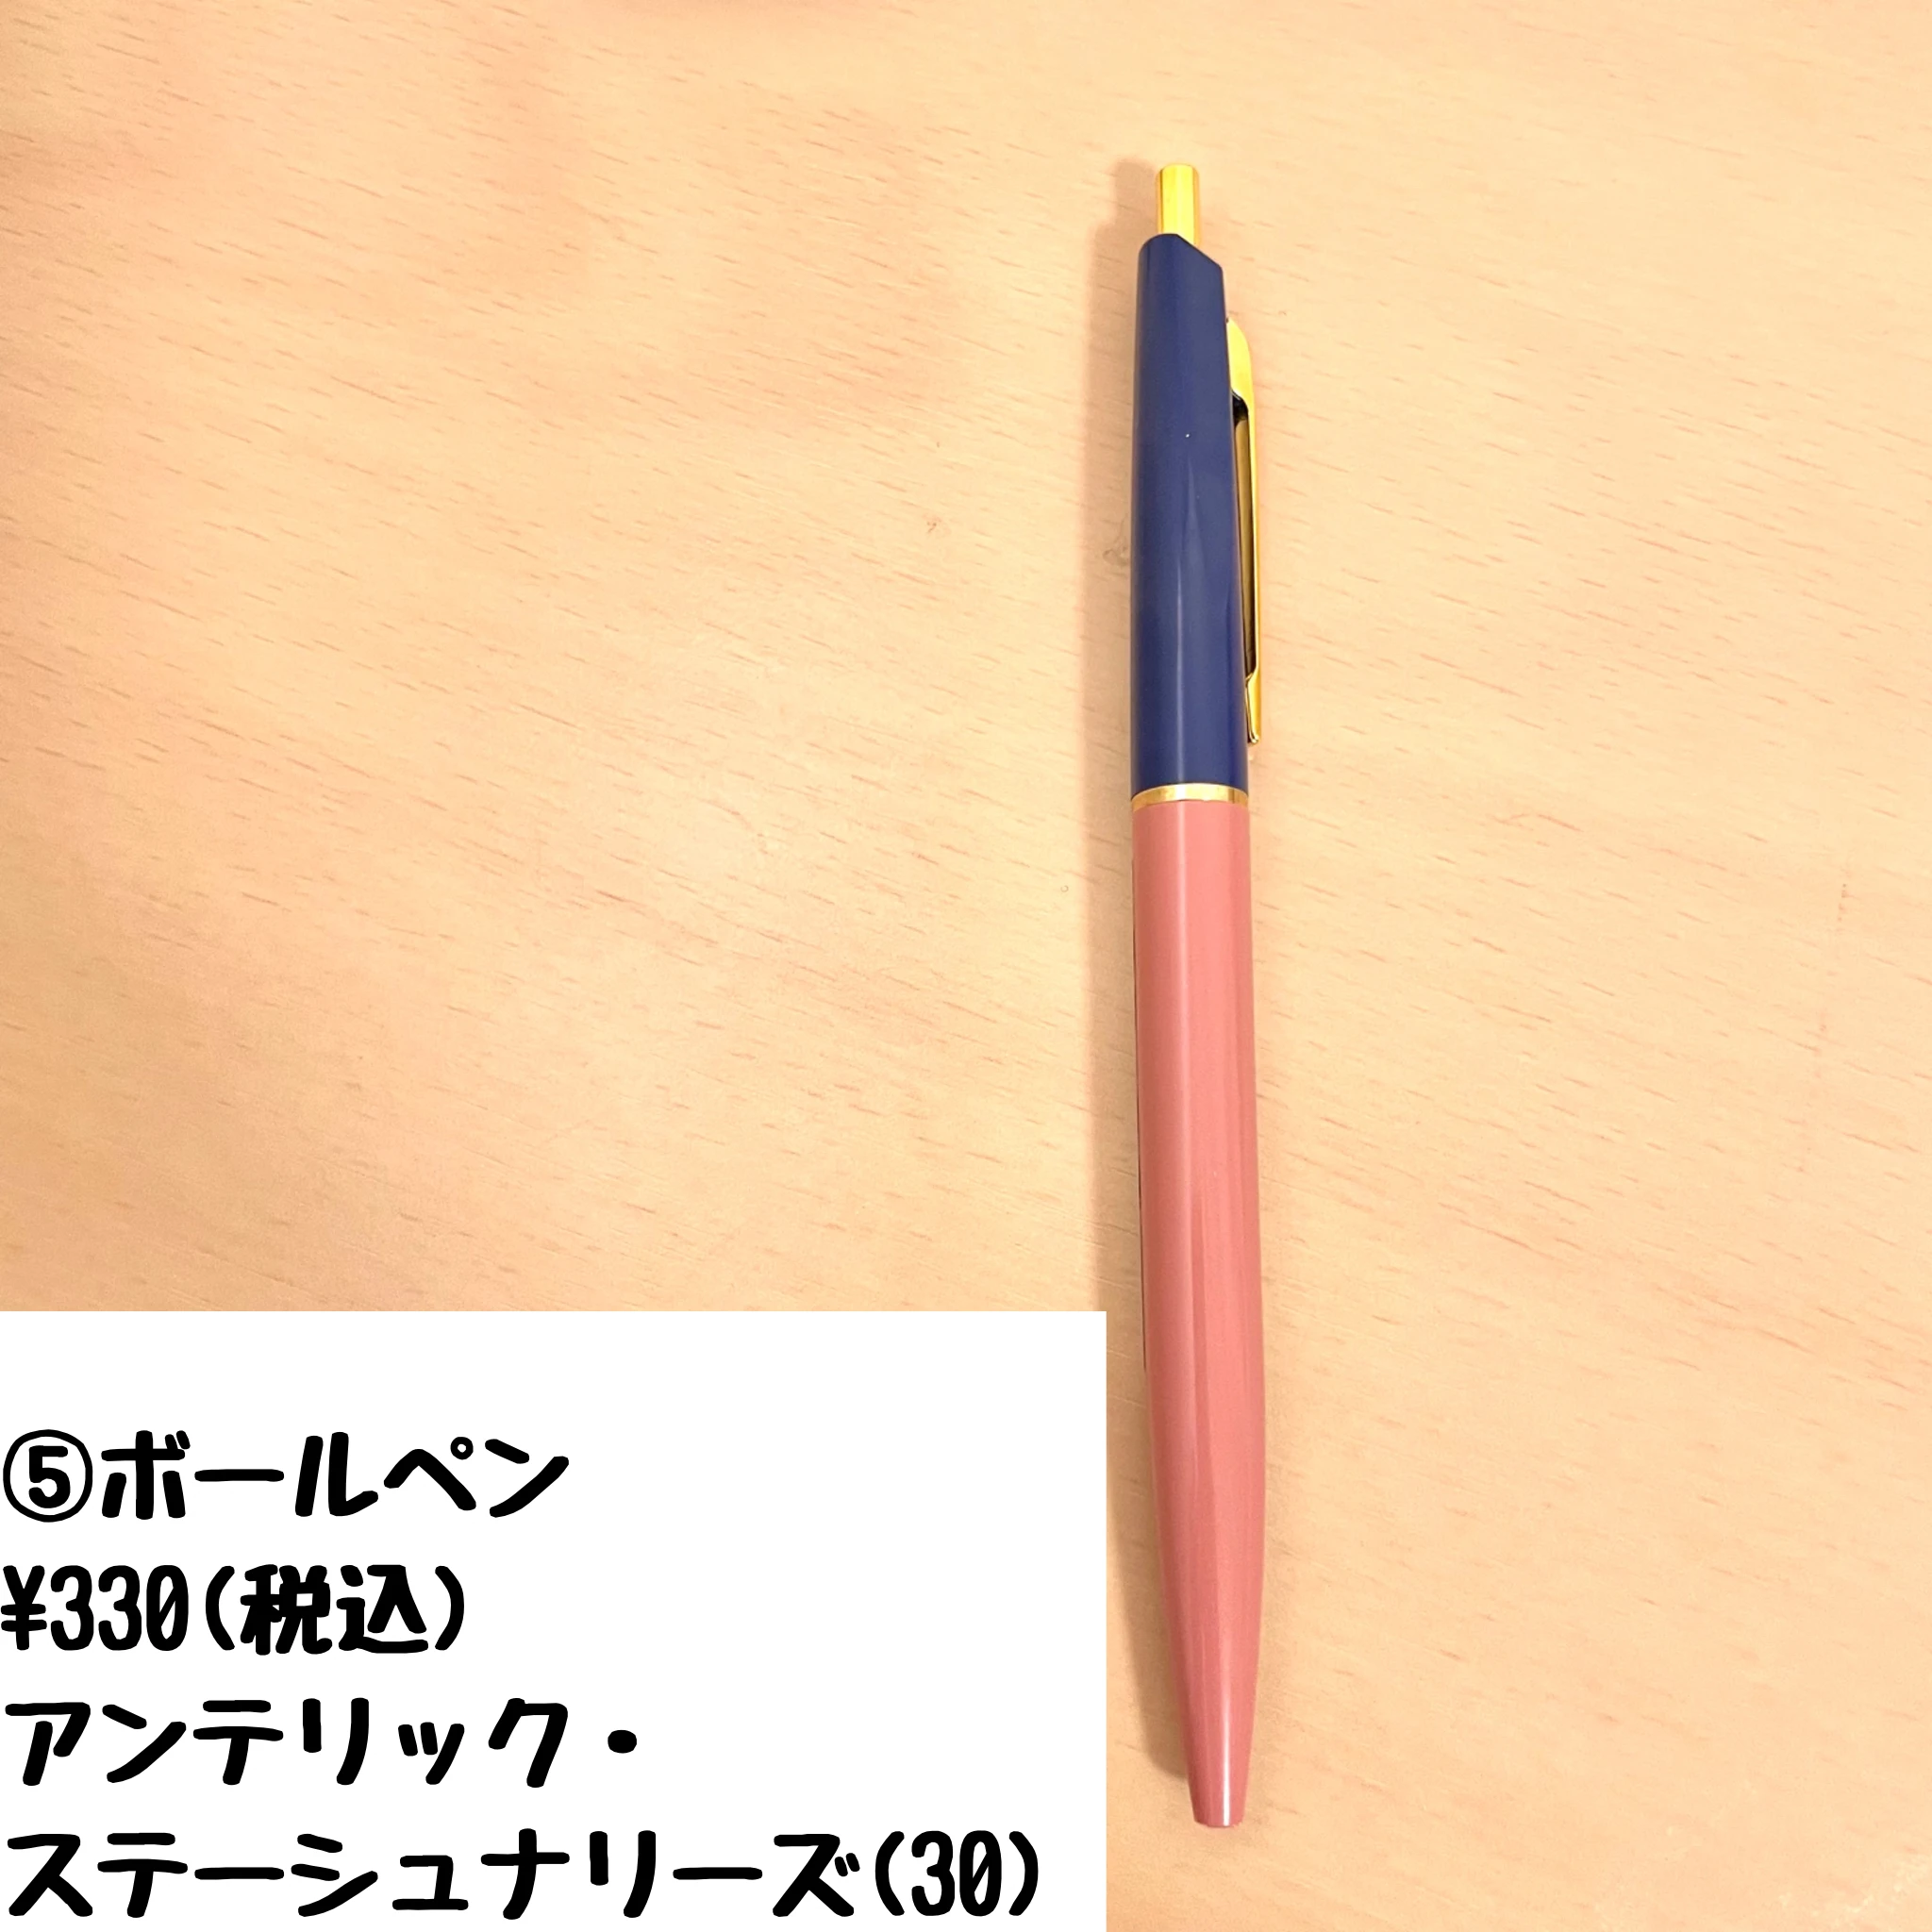 ボールペン　0.5 黒インク
アンテリック・ステーショナリーズ